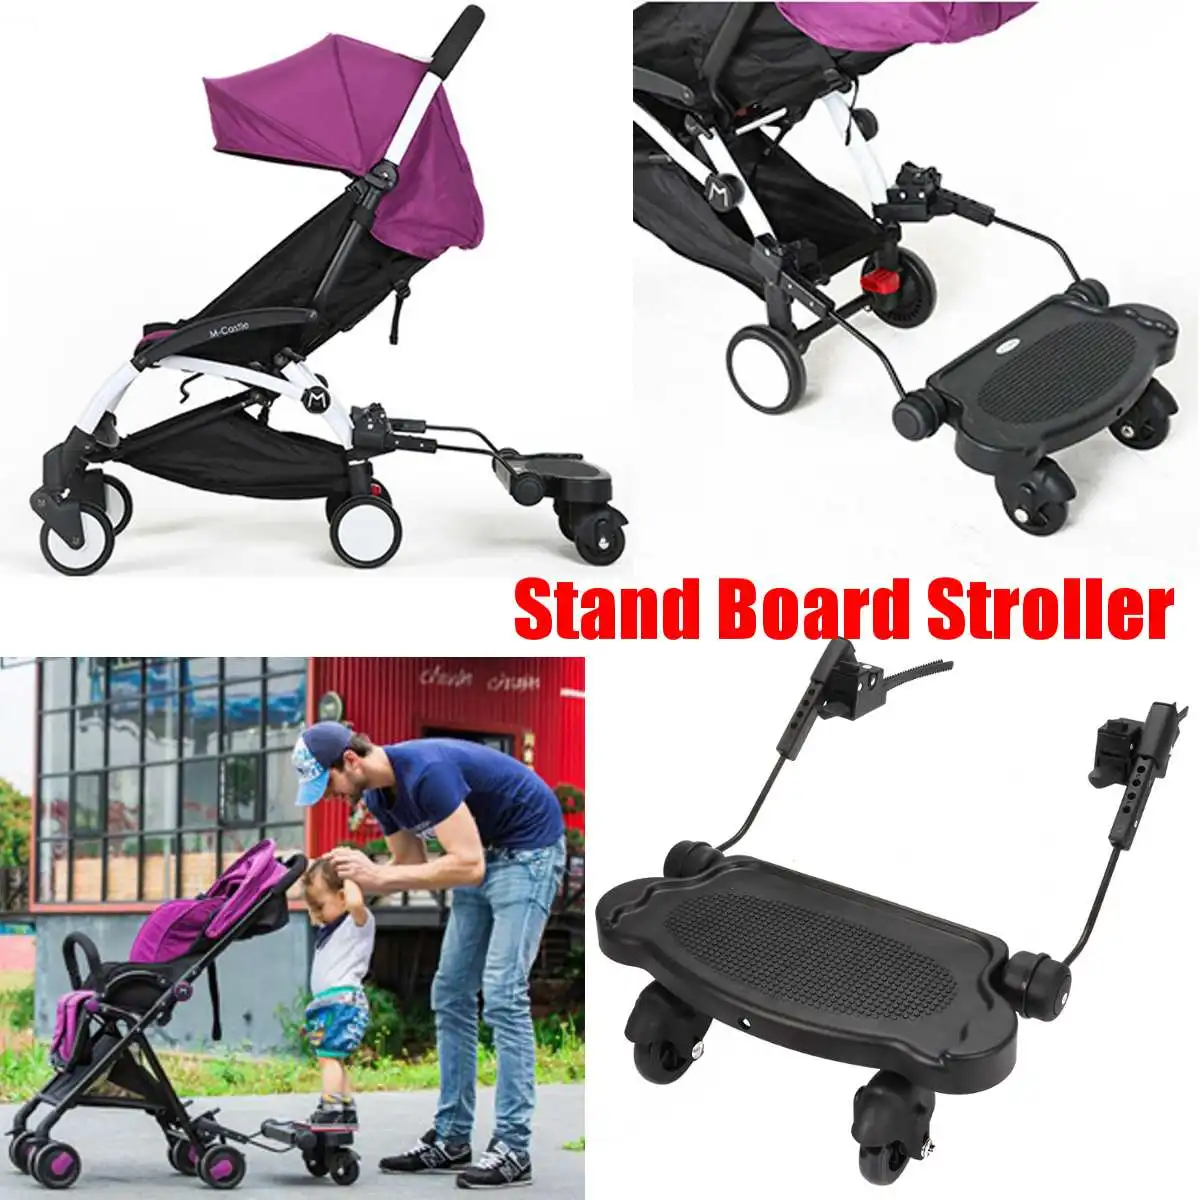 Детская прогулочная коляска, подставка для доски, прочная прогулочная коляска, аксессуар для активного отдыха, прогулочная коляска, детское сиденье, стоящая пластина